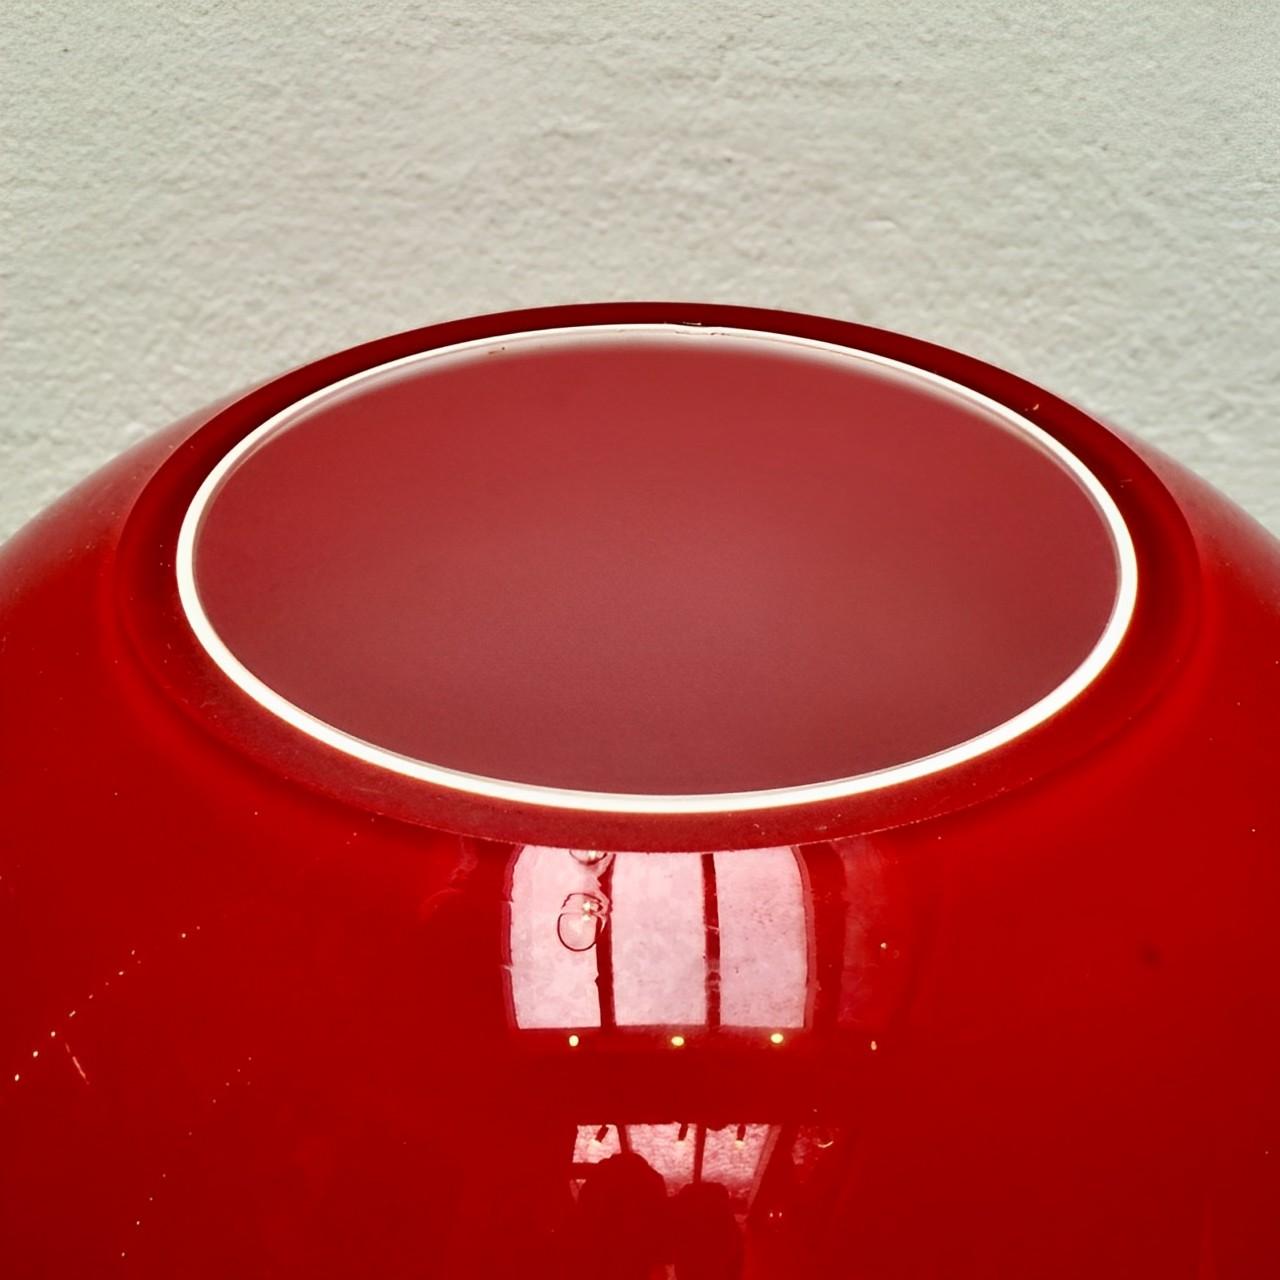 Vase boule en verre d'art lourd, de couleur rouge progressant vers une base rouge plus foncée, avec un intérieur blanc. Le vase a une magnifique forme organique ronde. Hauteur 18,5 cm / 7,2 pouces, diamètre 16,9 cm / 6,65 pouces.

Il s'agit d'un